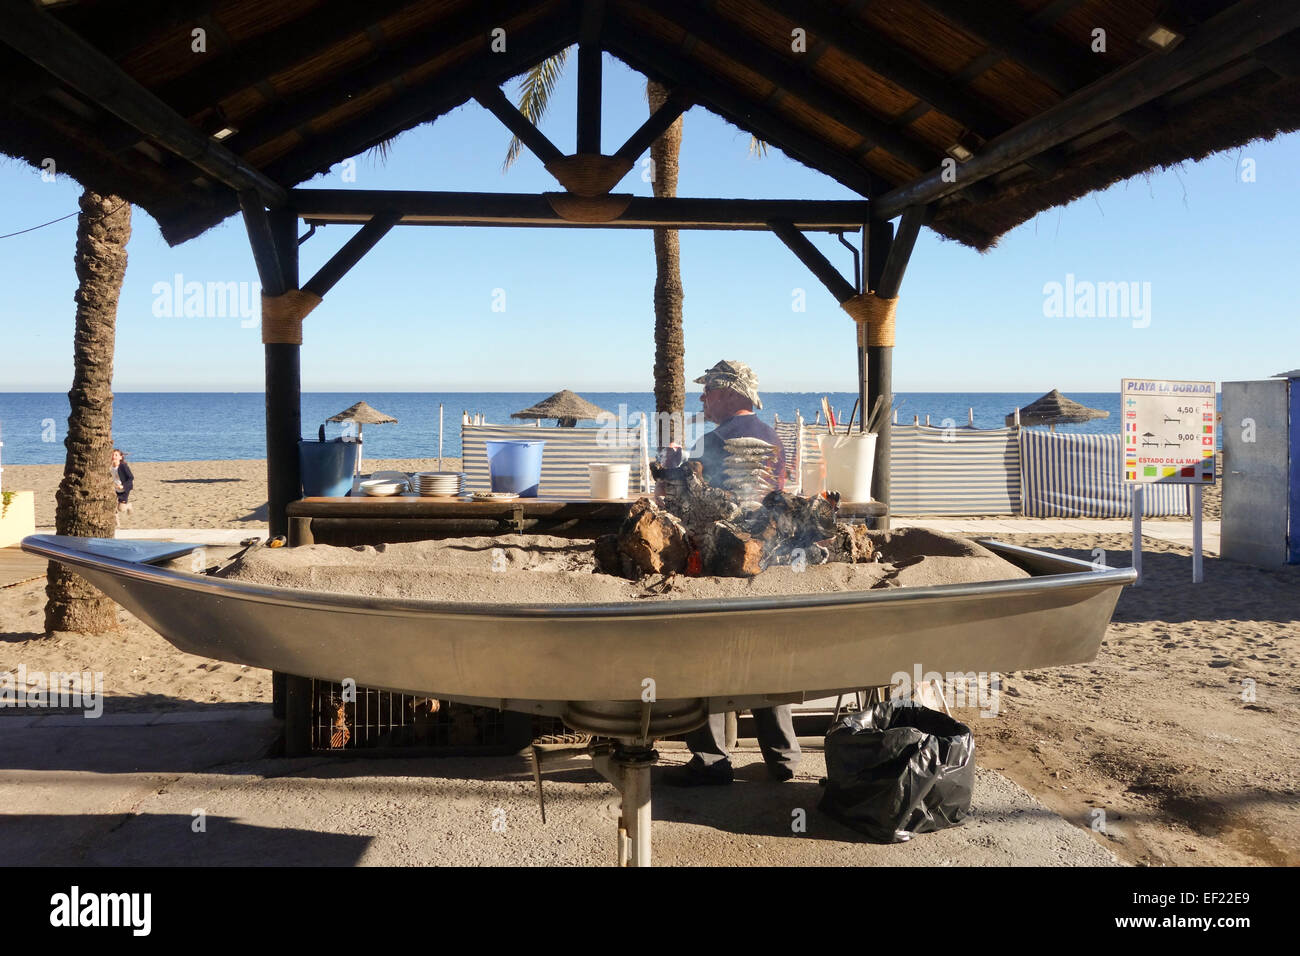 Homme espagnol, Sardines grillées au feu de bois barbecue ouvert, dans le sud de l'Espagne, Fuengirola Beach. Banque D'Images